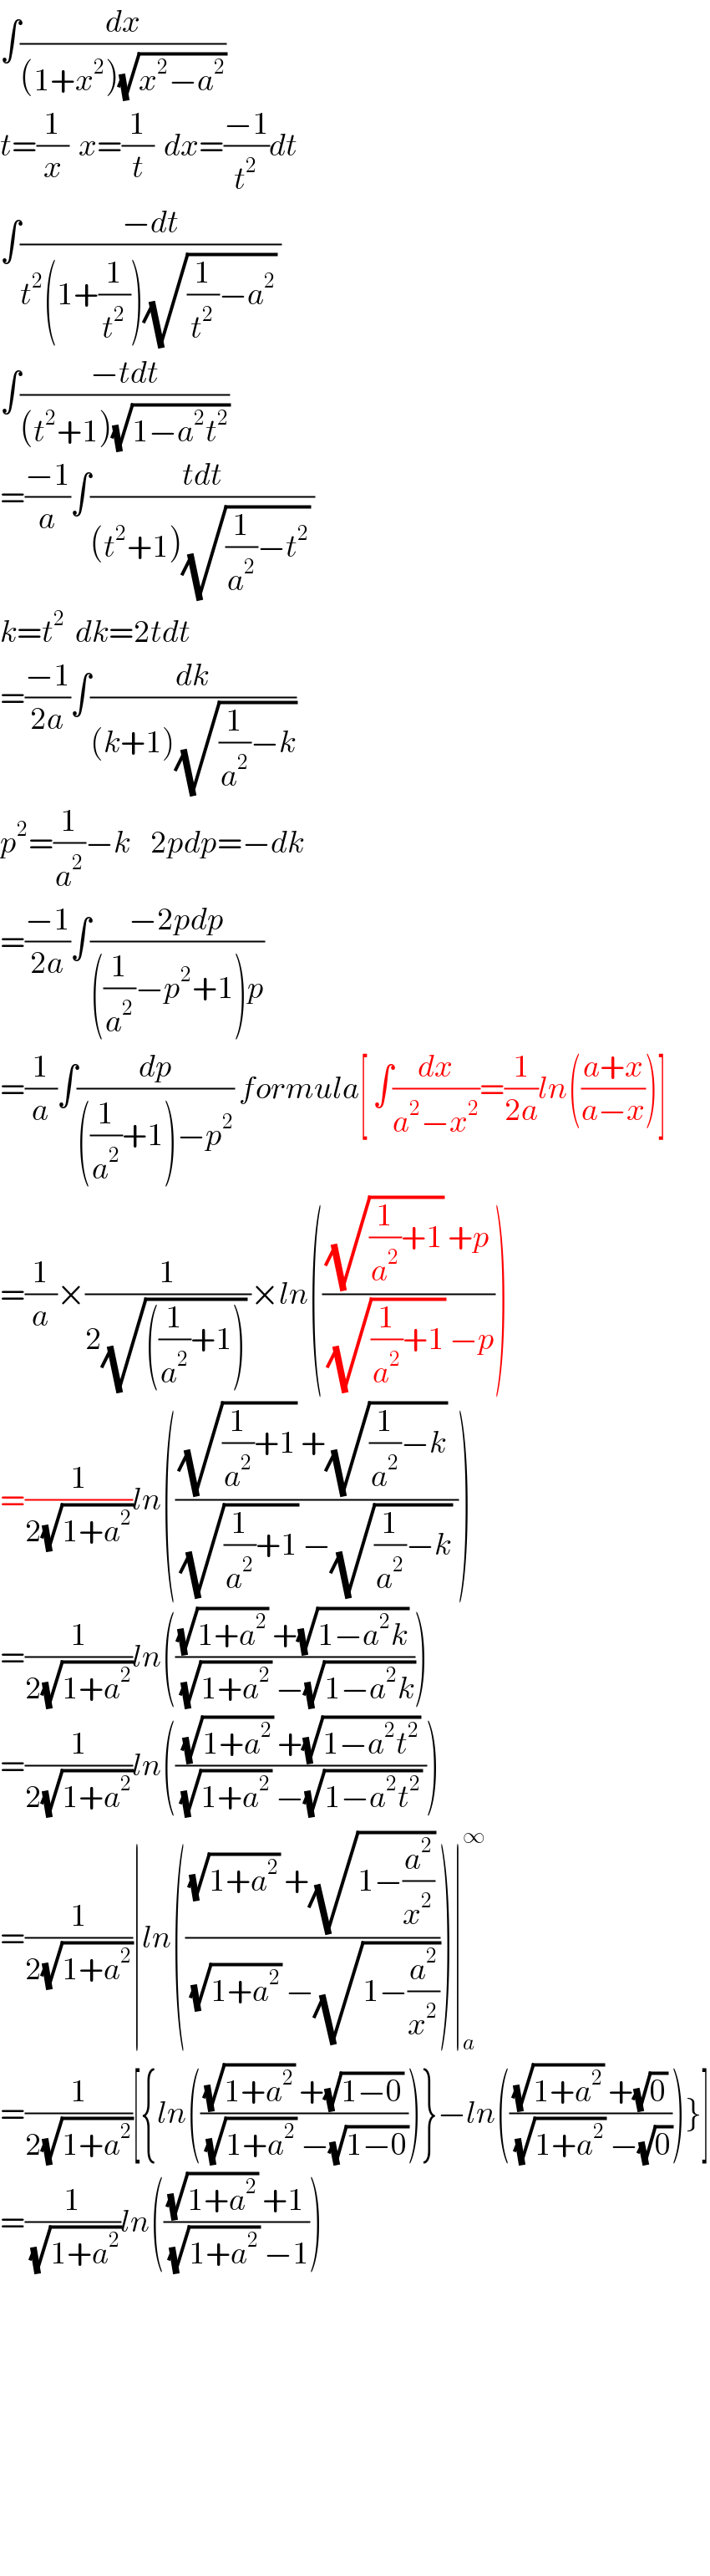 ∫(dx/((1+x^2 )(√(x^2 −a^2 ))))  t=(1/x)  x=(1/t)  dx=((−1)/t^2 )dt  ∫((−dt)/(t^2 (1+(1/t^2 ))(√((1/t^2 )−a^2 )) ))  ∫((−tdt)/((t^2 +1)(√(1−a^2 t^2 ))))  =((−1)/a)∫((tdt)/((t^2 +1)(√((1/a^2 )−t^2 )) ))  k=t^2   dk=2tdt  =((−1)/(2a))∫(dk/((k+1)(√((1/a^2 )−k))))  p^2 =(1/a^2 )−k    2pdp=−dk  =((−1)/(2a))∫((−2pdp)/(((1/a^2 )−p^2 +1)p))  =(1/a)∫(dp/(((1/a^2 )+1)−p^2 )) formula[ ∫(dx/(a^2 −x^2 ))=(1/(2a))ln(((a+x)/(a−x)))]  =(1/a)×(1/(2(√(((1/a^2 )+1))) ))×ln((((√((1/a^2 )+1)) +p)/((√((1/a^2 )+1)) −p)))  =(1/(2(√(1+a^2 ))))ln((((√((1/a^2 )+1)) +(√((1/a^2 )−k)) )/((√((1/a^2 )+1)) −(√((1/a^2 )−k)) )))  =(1/(2(√(1+a^2 ))))ln((((√(1+a^2 )) +(√(1−a^2 k)) )/((√(1+a^2 )) −(√(1−a^2 k)))))  =(1/(2(√(1+a^2 ))))ln((((√(1+a^2 )) +(√(1−a^2 t^2 )))/((√(1+a^2 )) −(√(1−a^2 t^2 )) )))  =(1/(2(√(1+a^2 ))))∣ln((((√(1+a^2 )) +(√(1−(a^2 /x^2 ))))/((√(1+a^2 )) −(√(1−(a^2 /x^2 ))))))∣_a ^∞   =(1/(2(√(1+a^2 ))))[{ln((((√(1+a^2 )) +(√(1−0)))/((√(1+a^2 )) −(√(1−0)))))}−ln((((√(1+a^2 )) +(√0))/((√(1+a^2 )) −(√0))))}]  =(1/(√(1+a^2 )))ln((((√(1+a^2 )) +1)/((√(1+a^2 )) −1)))              